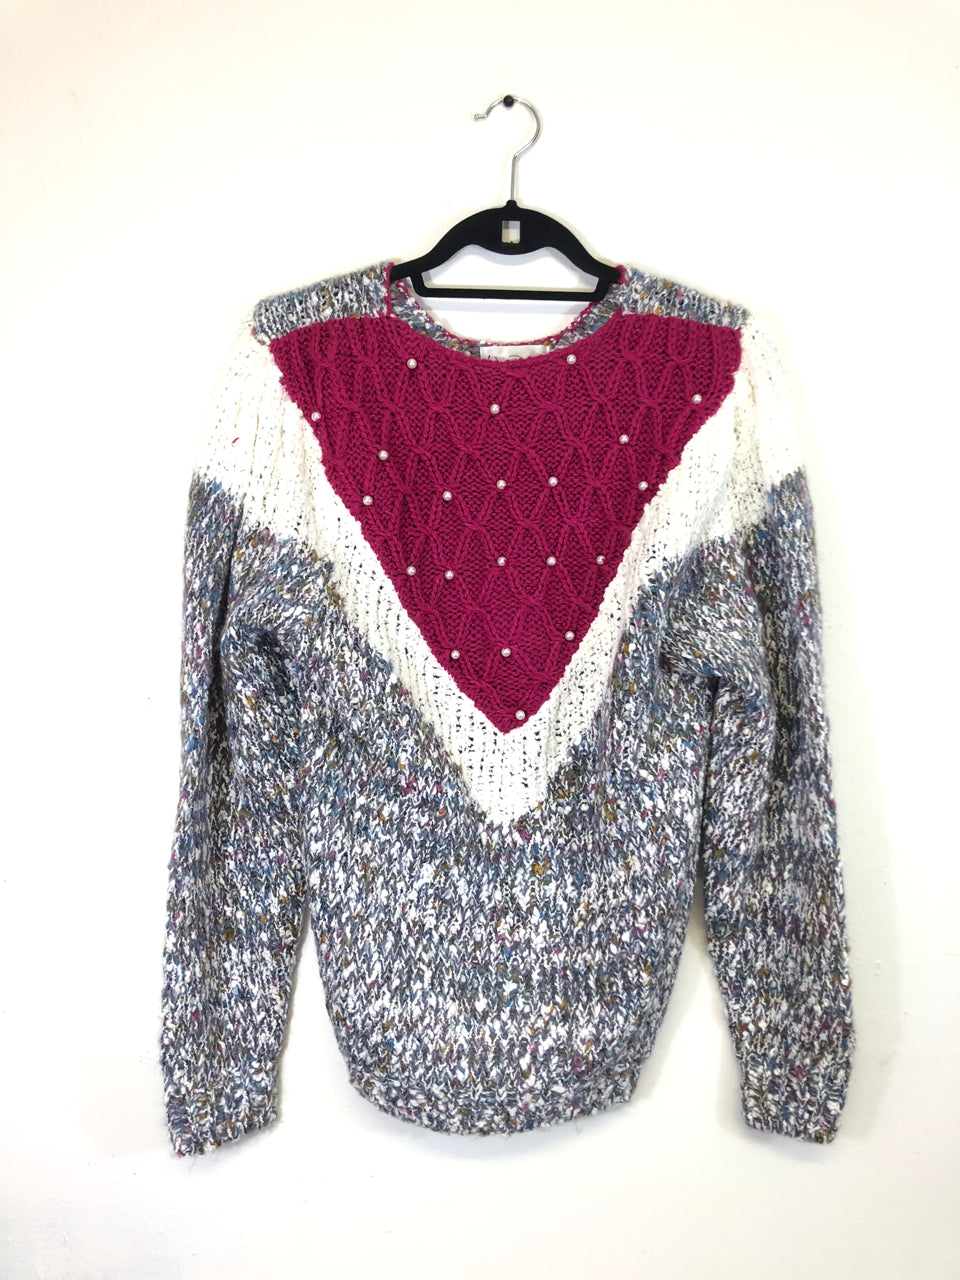 Wye Oaks Pearly Sweater (Deadstock)